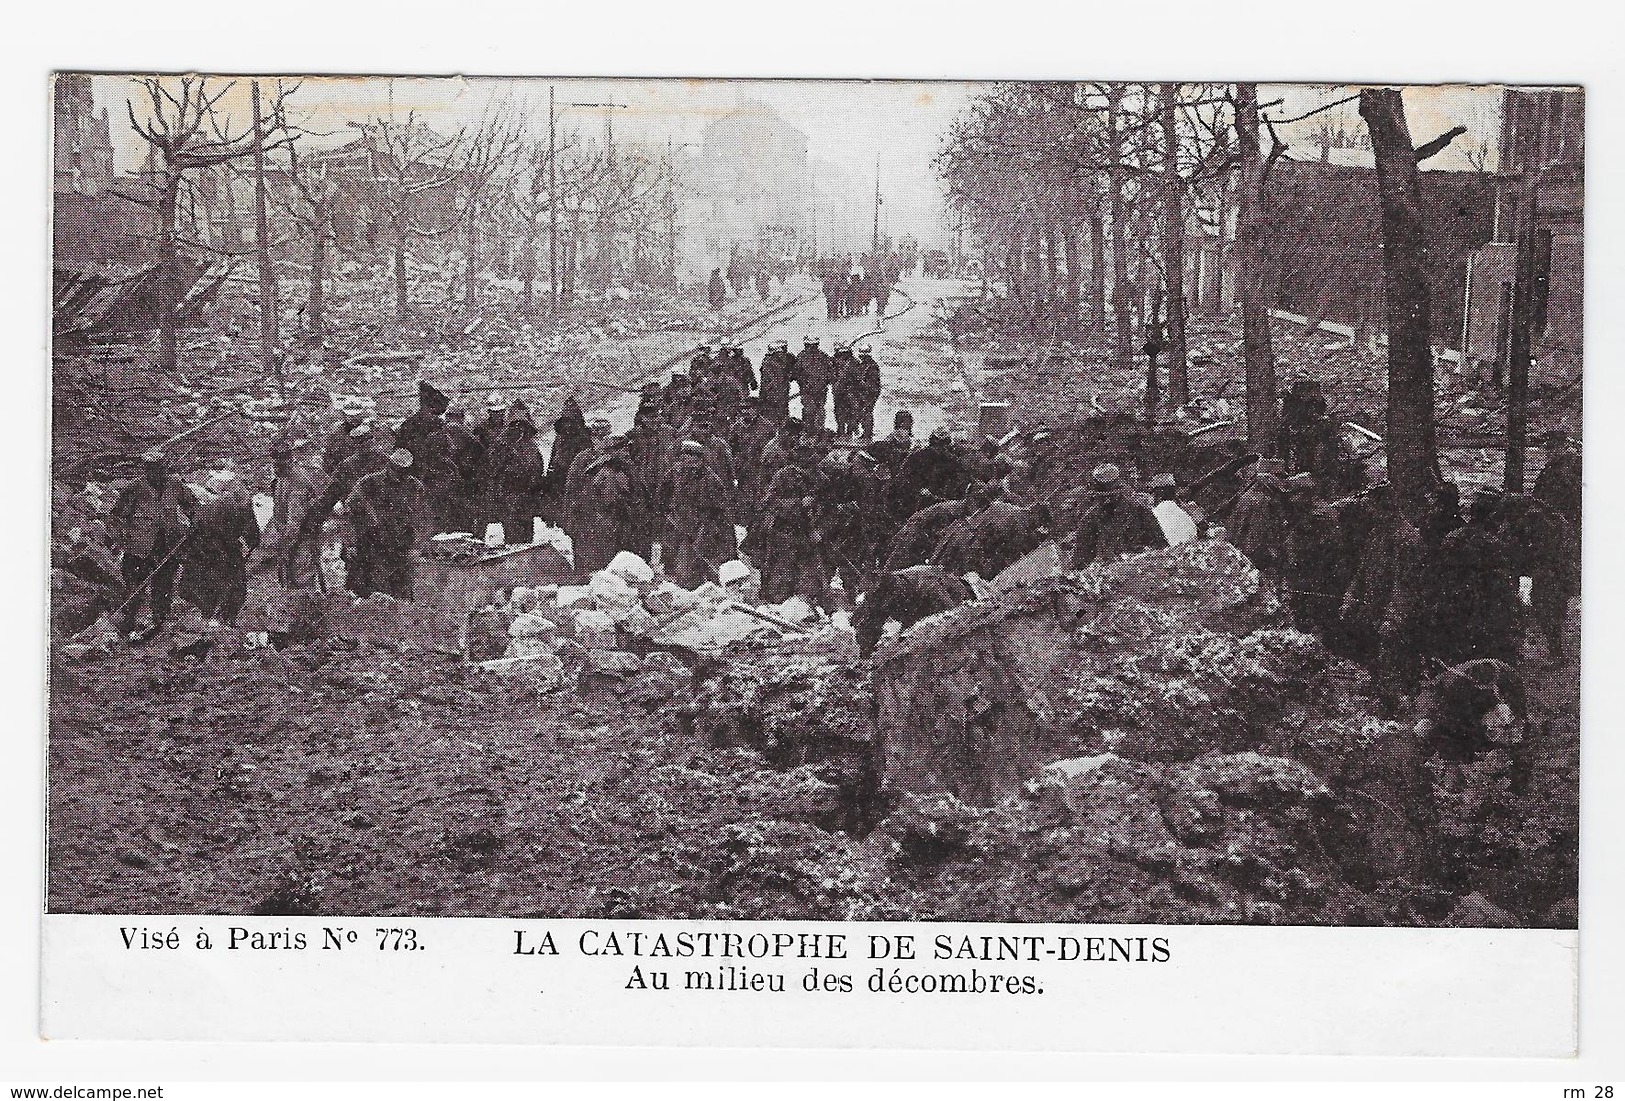 Saint-Denis : lot de 41 CPA (1905 à 1916, ABE et BE) voir les 42 scans et le descriptif